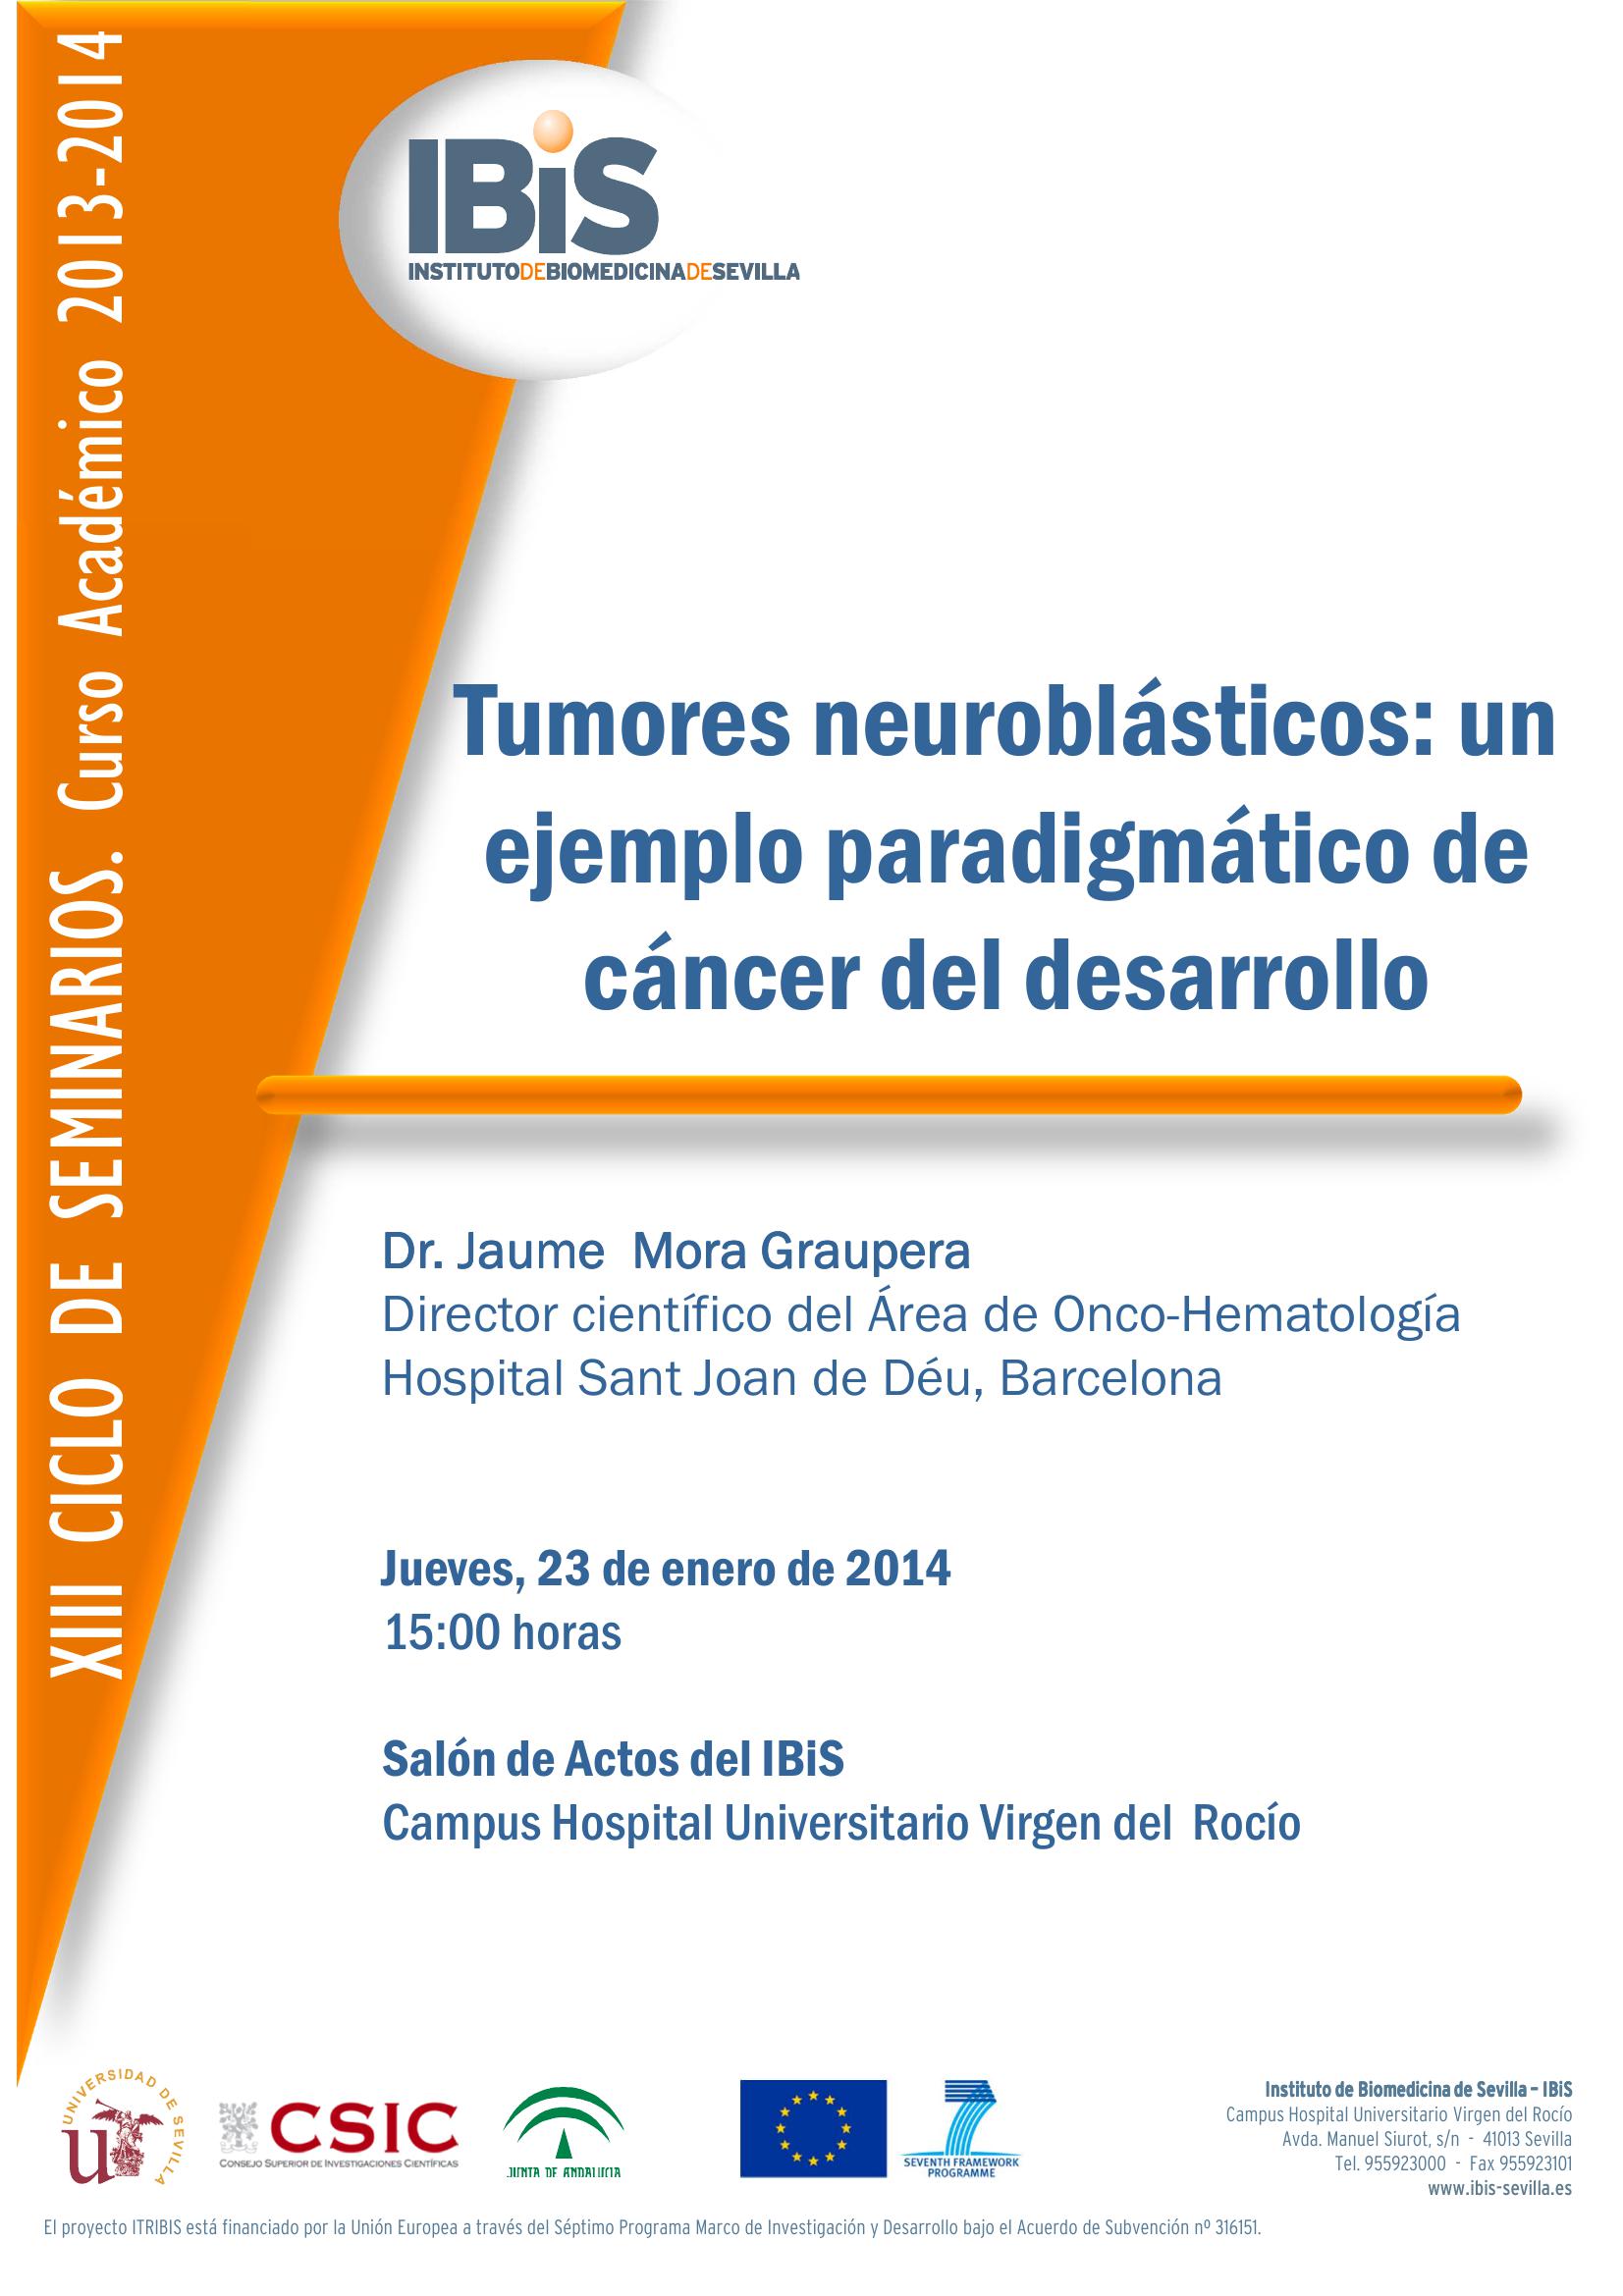 Poster: Tumores neuroblásticos: un ejemplo paradigmático de cáncer del desarrollo